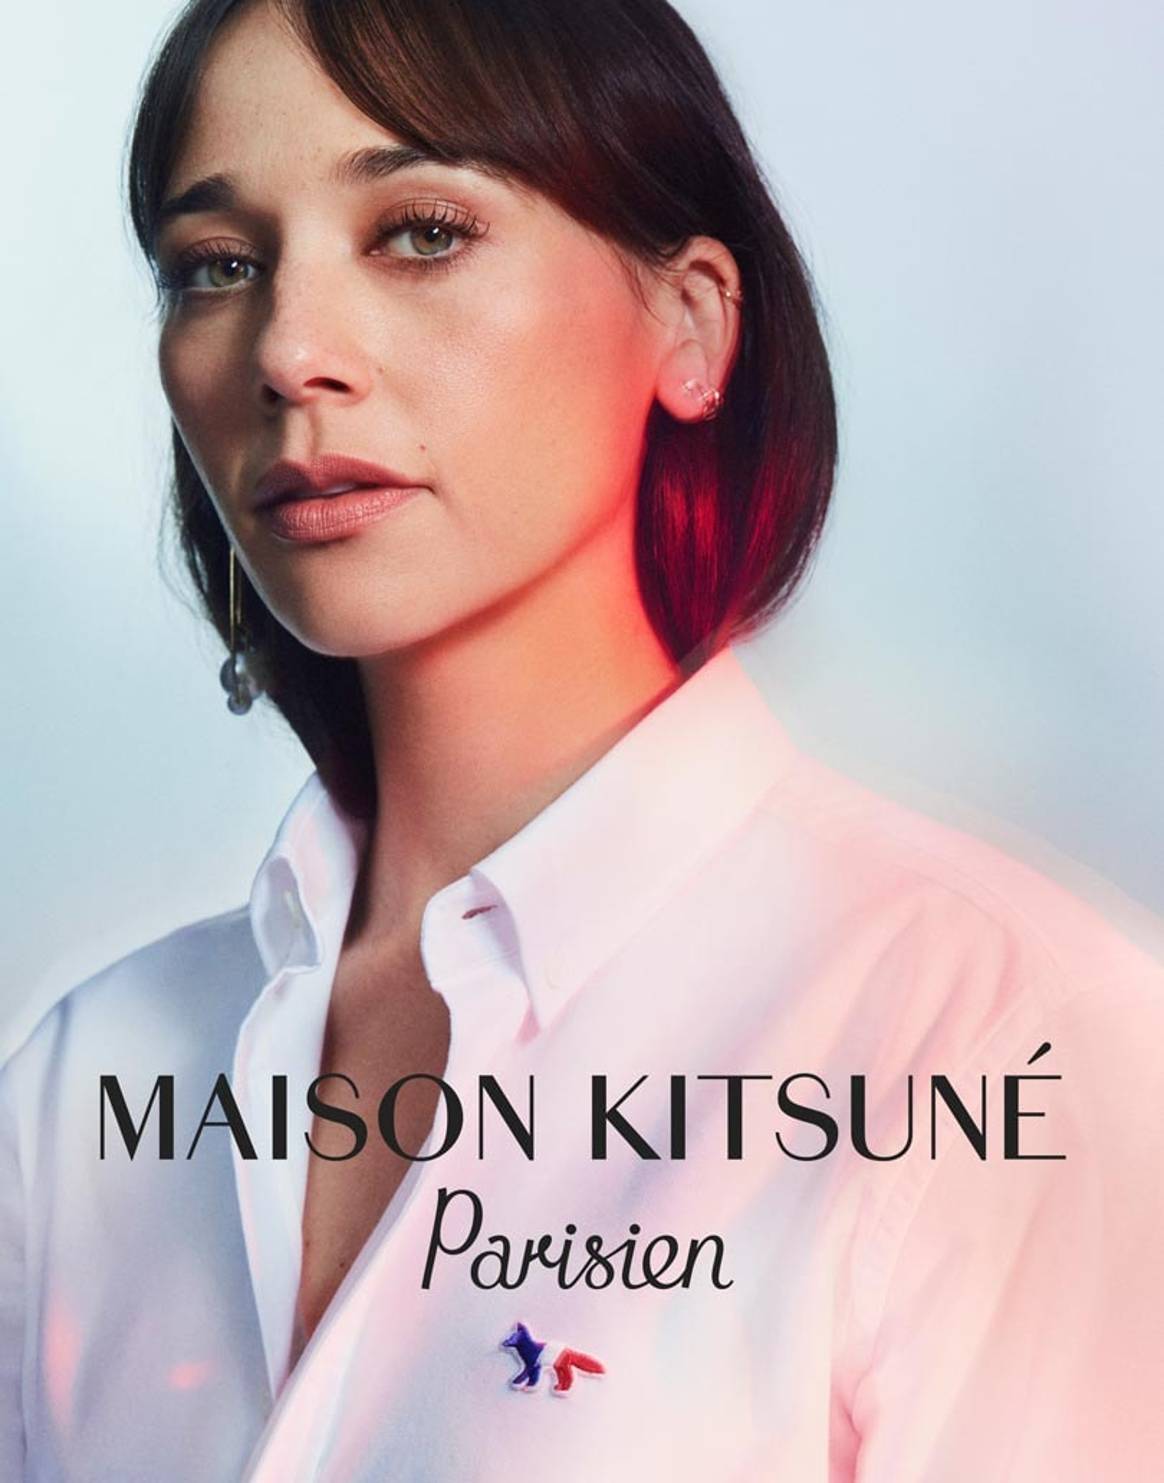 Maison Kitsuné "parisien" : collection à l'image de Rashida Jones